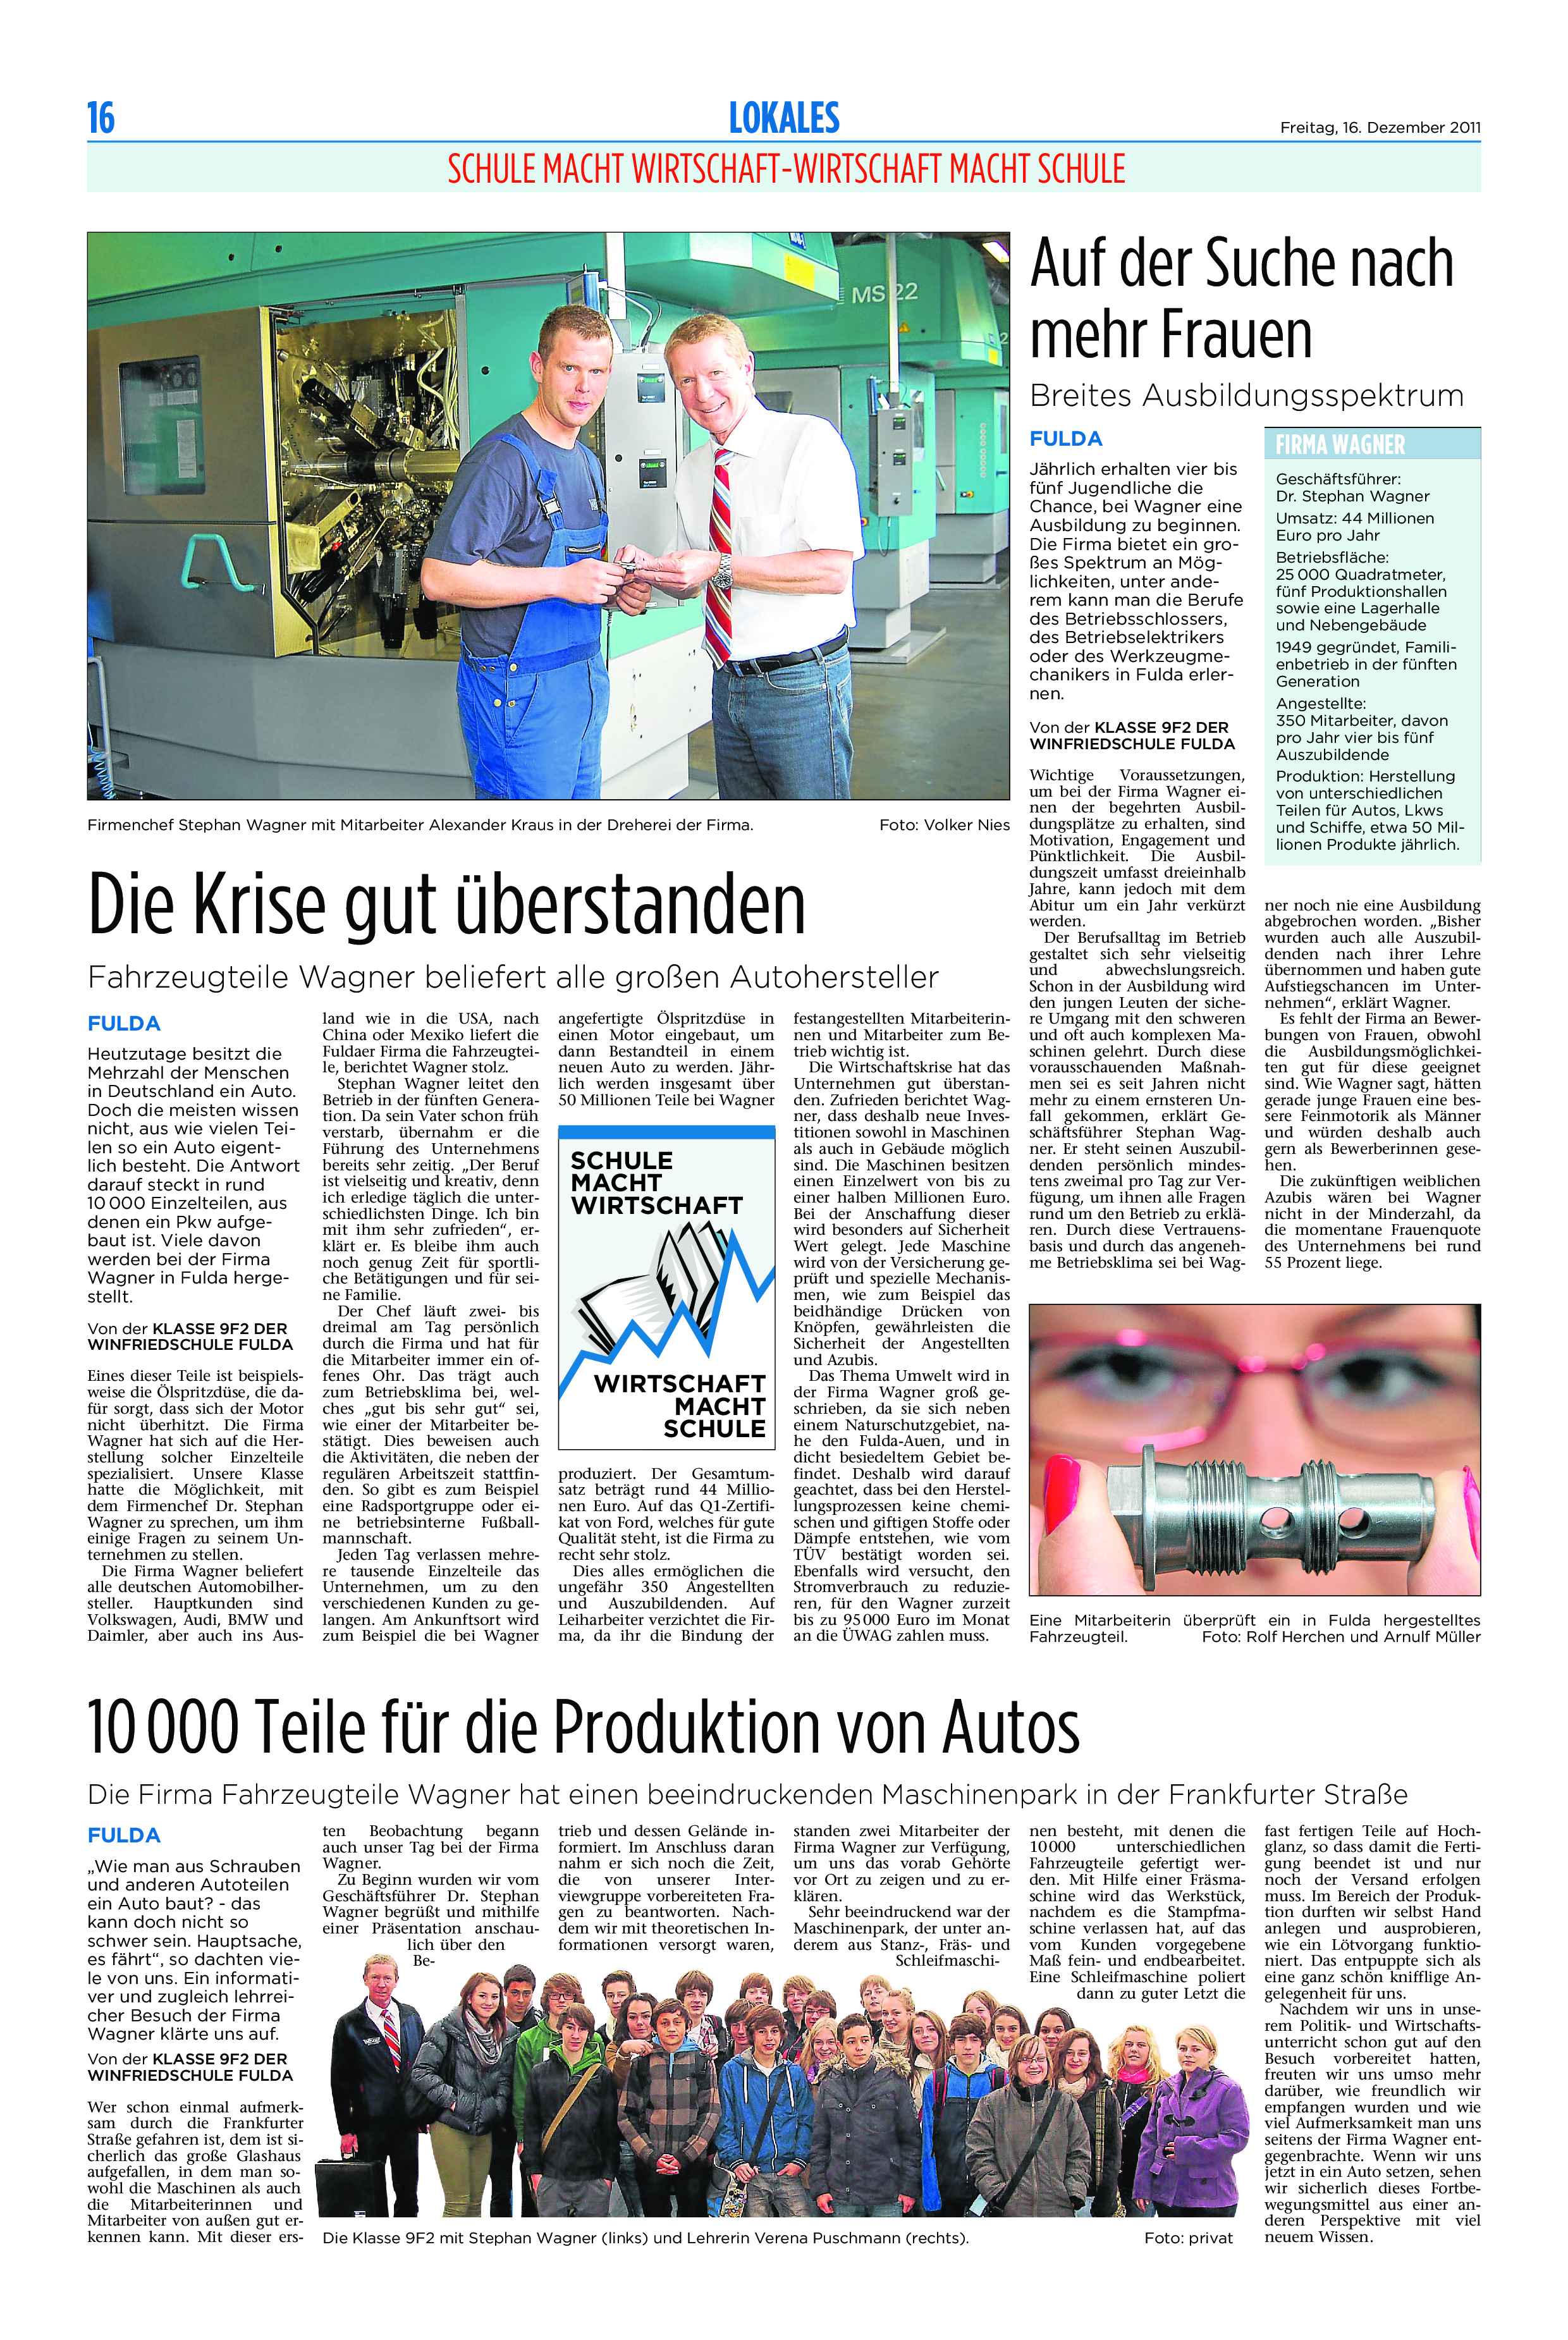 2011-Artikel_der_Fuldaer_Zeitung_vom_16.12.2011 1 of 1